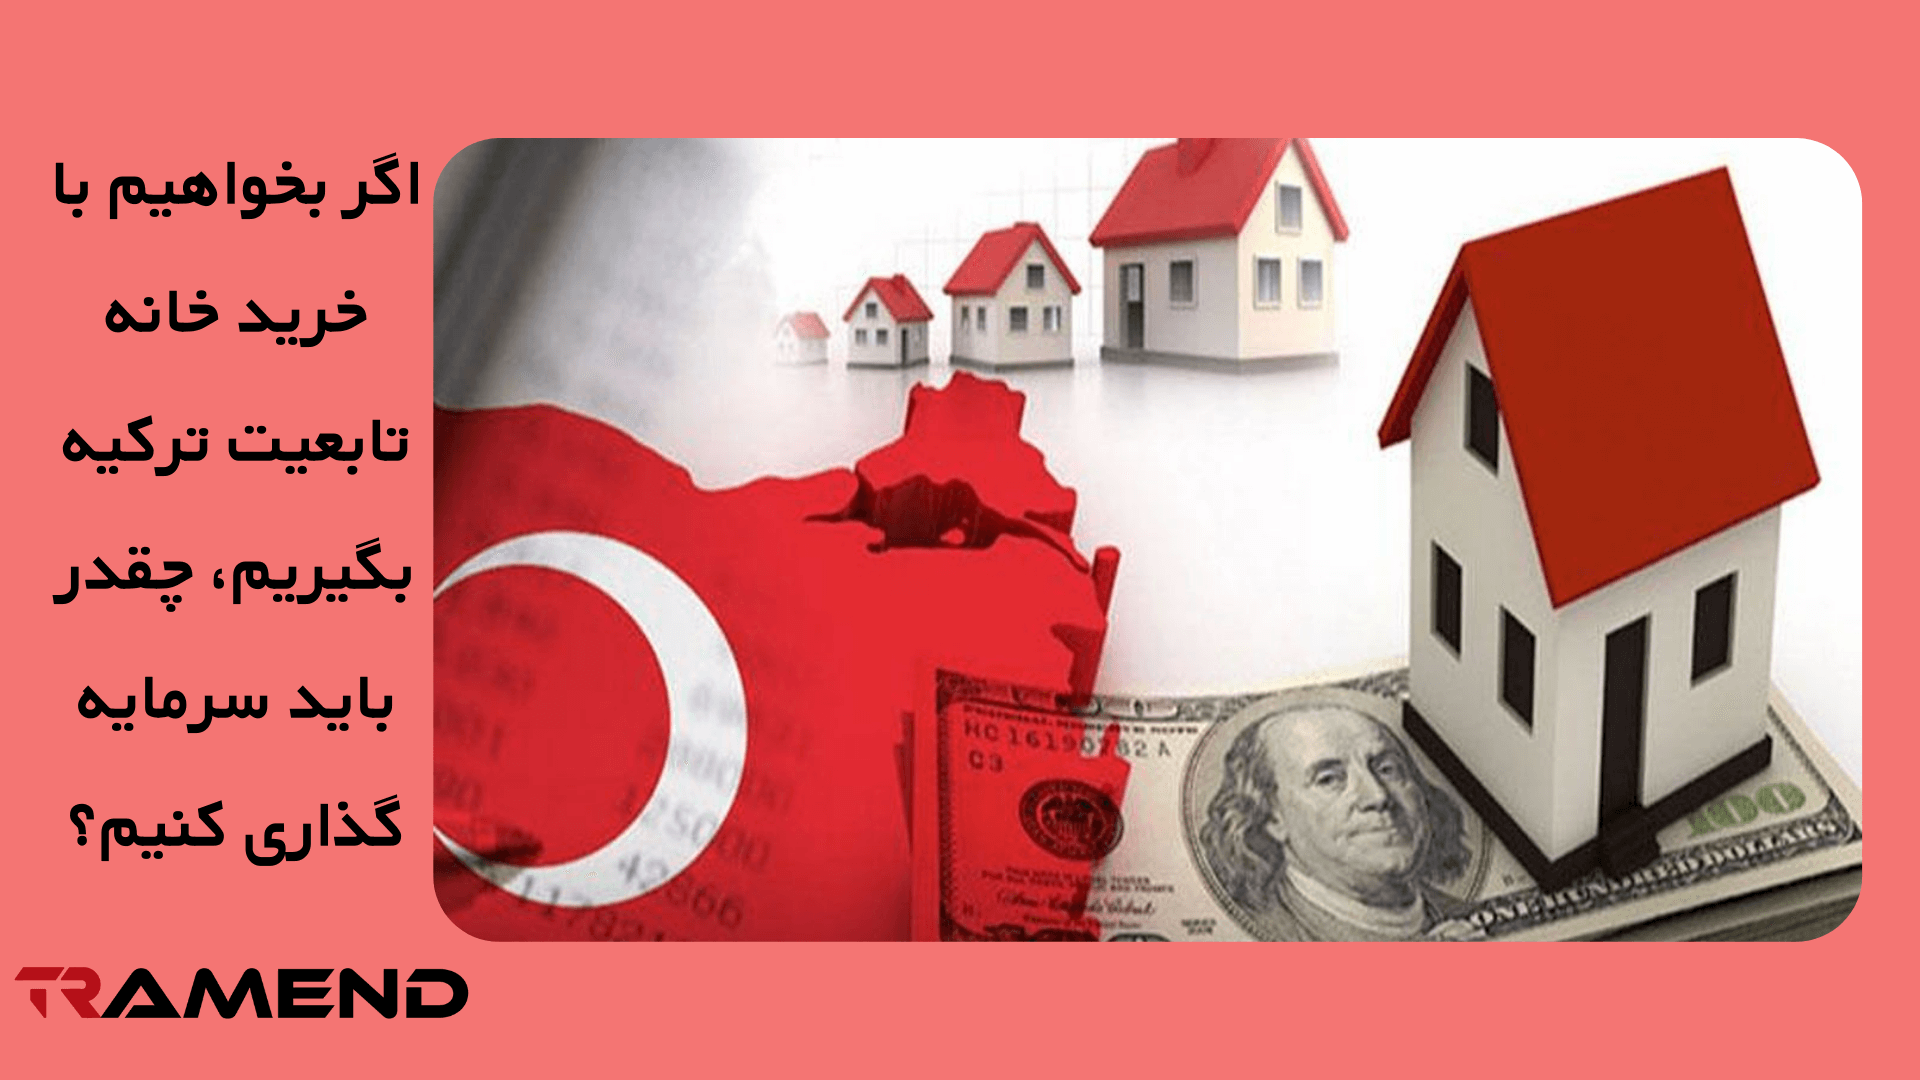 اگر بخواهیم با خرید خانه تابعیت ترکیه بگیریم، چقدر باید سرمایه گذاری کنیم؟